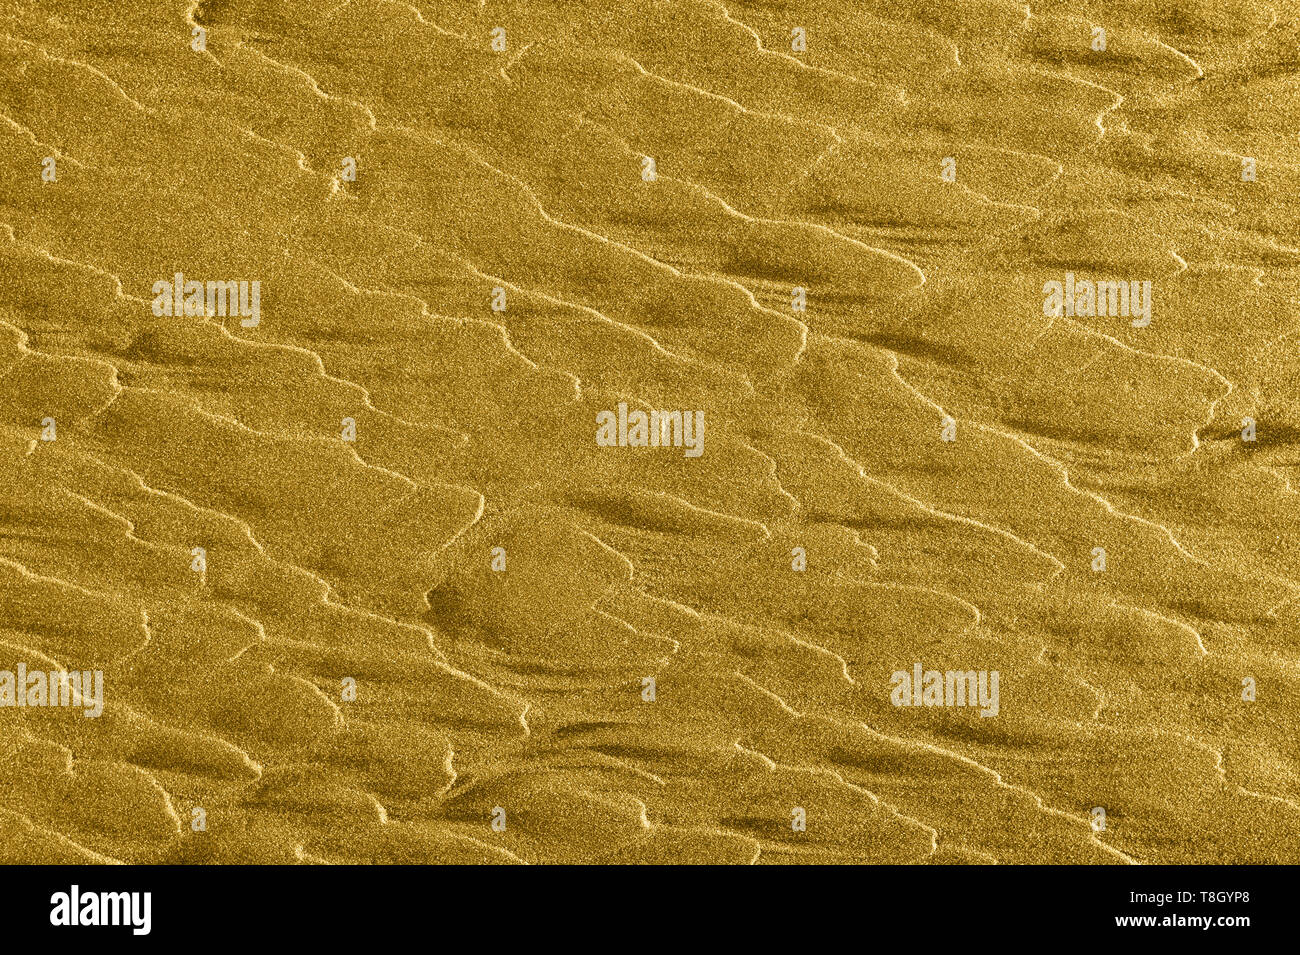 Vagues de sable doré abstract background texture avec copyspace. Banque D'Images